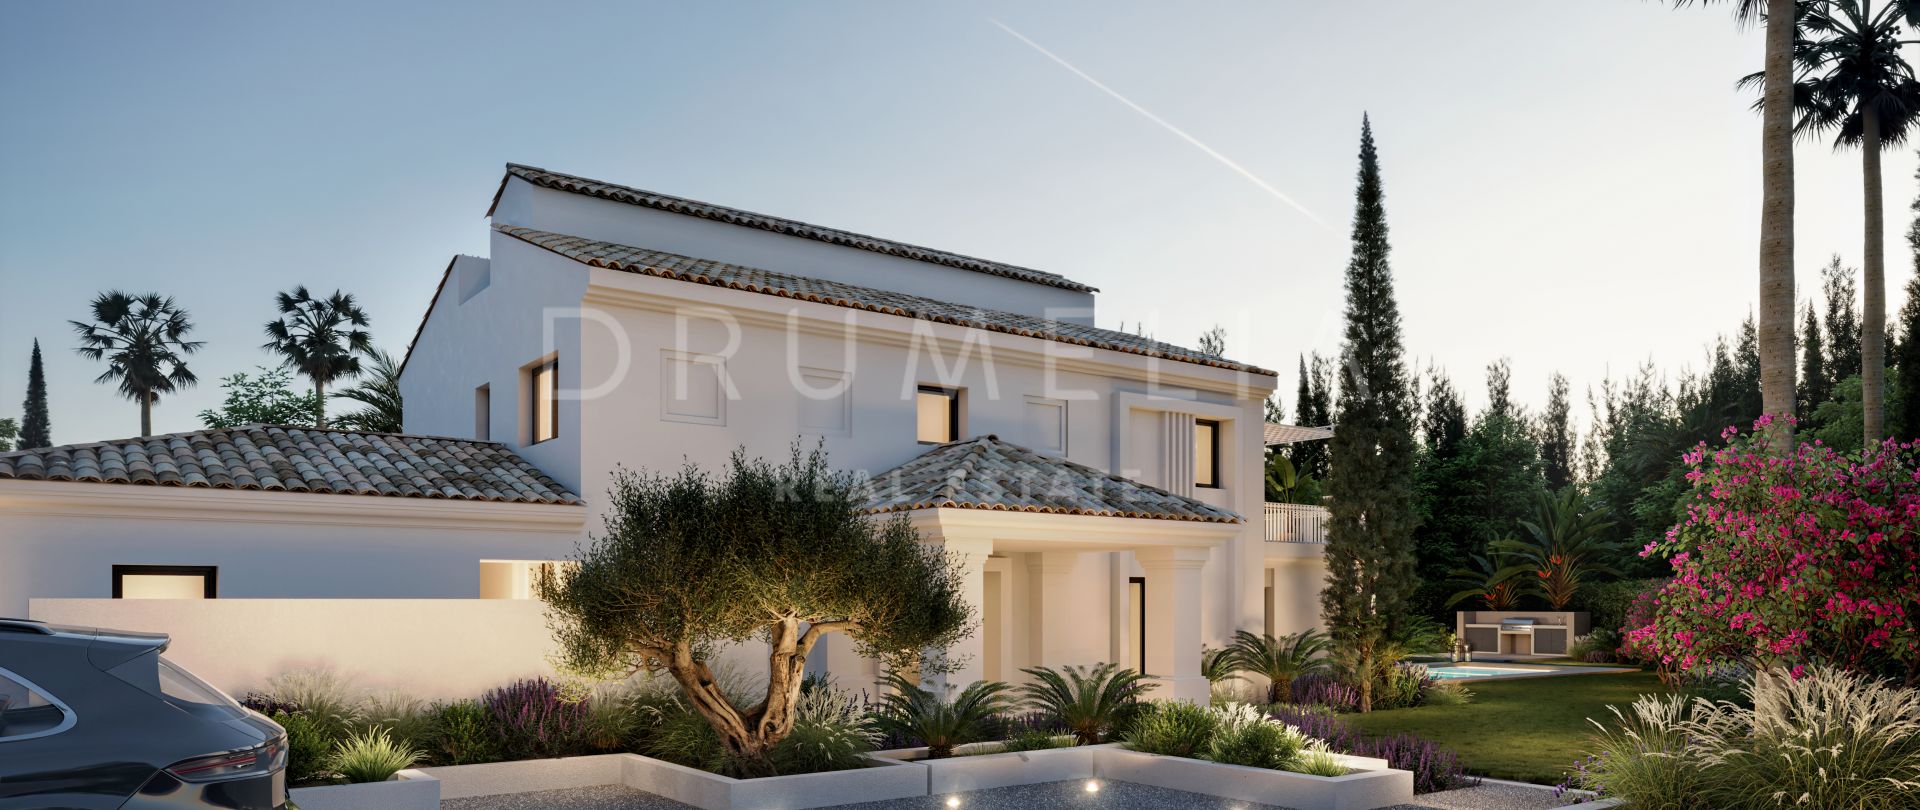 Nowo wyremontowany nowoczesny dom dla luksusowego śródziemnomorskiego stylu życia w Nueva Andalucia